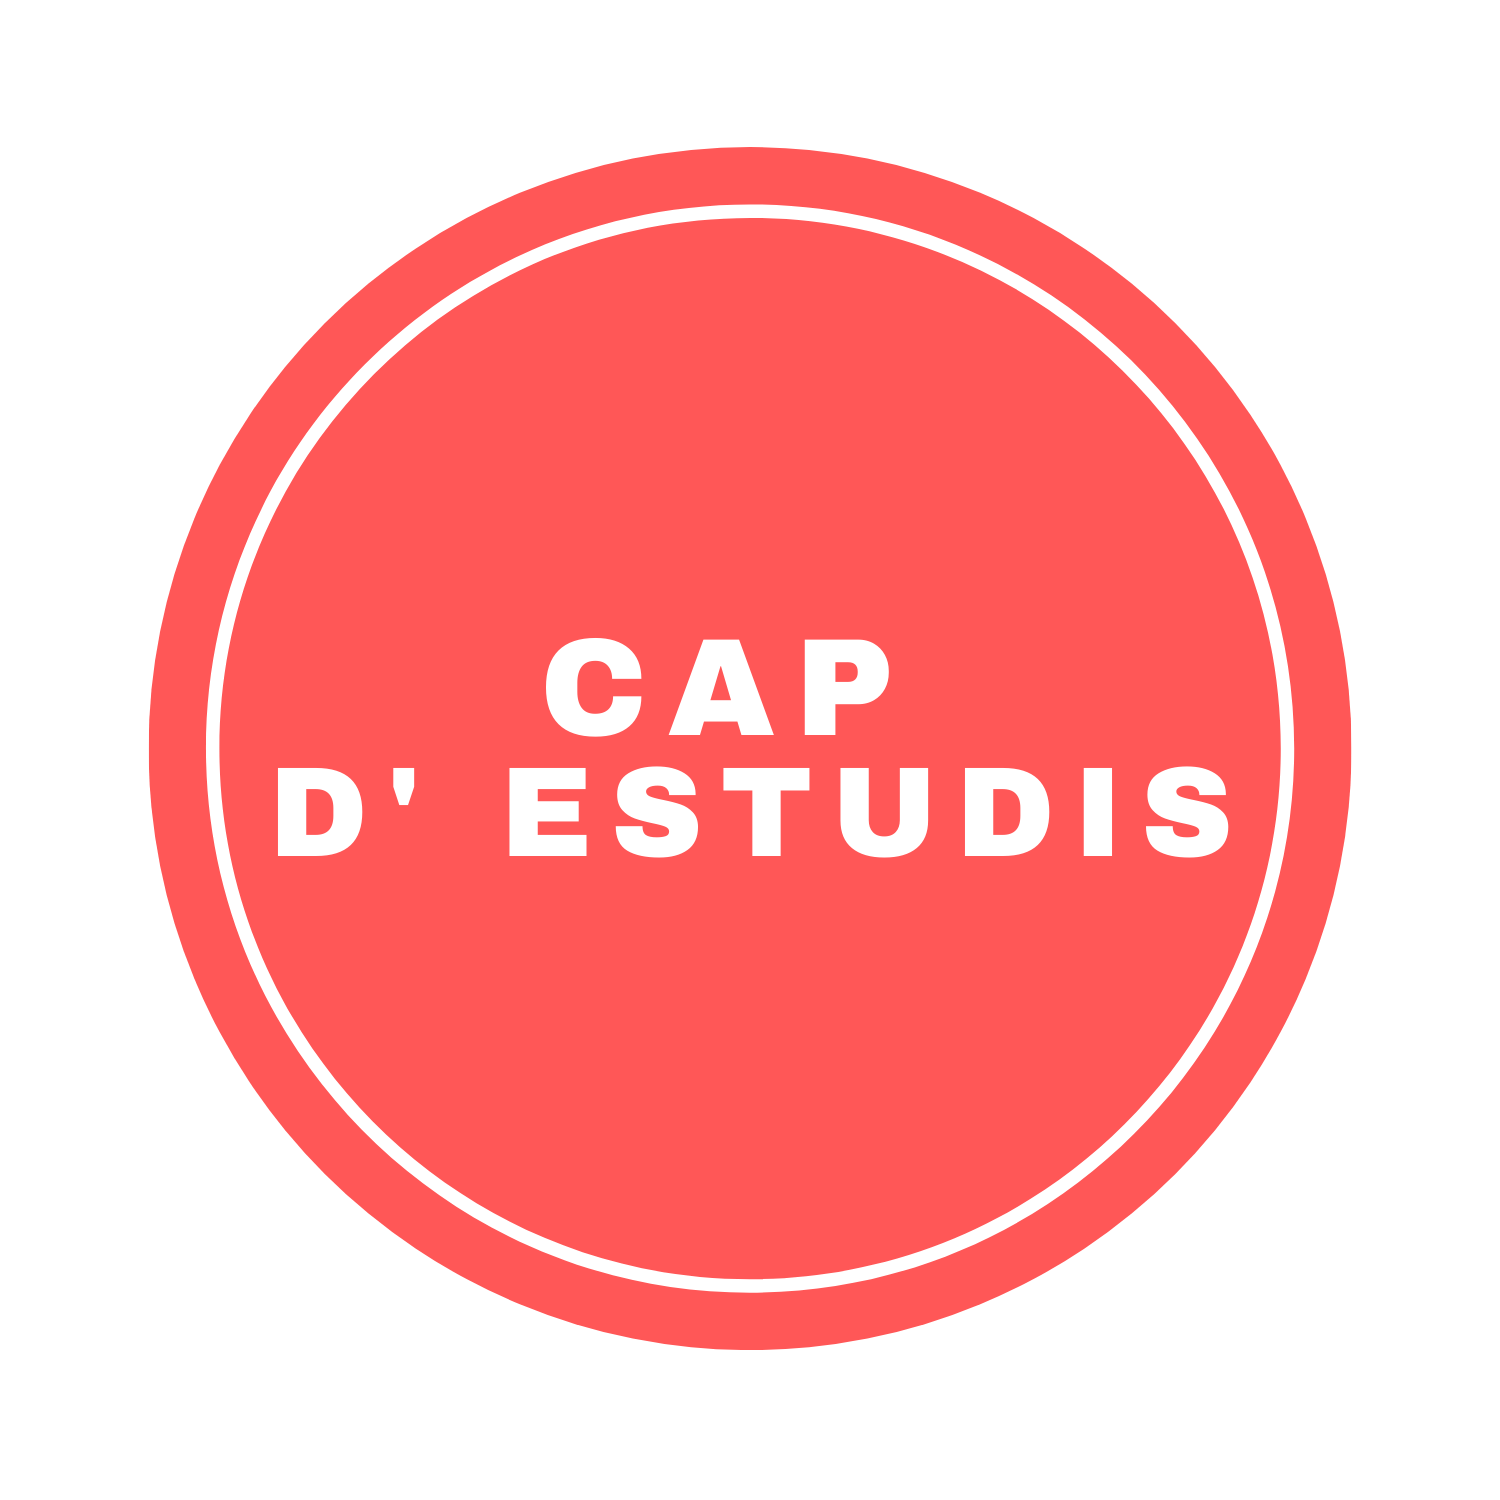 CAP D' ESTUDIS